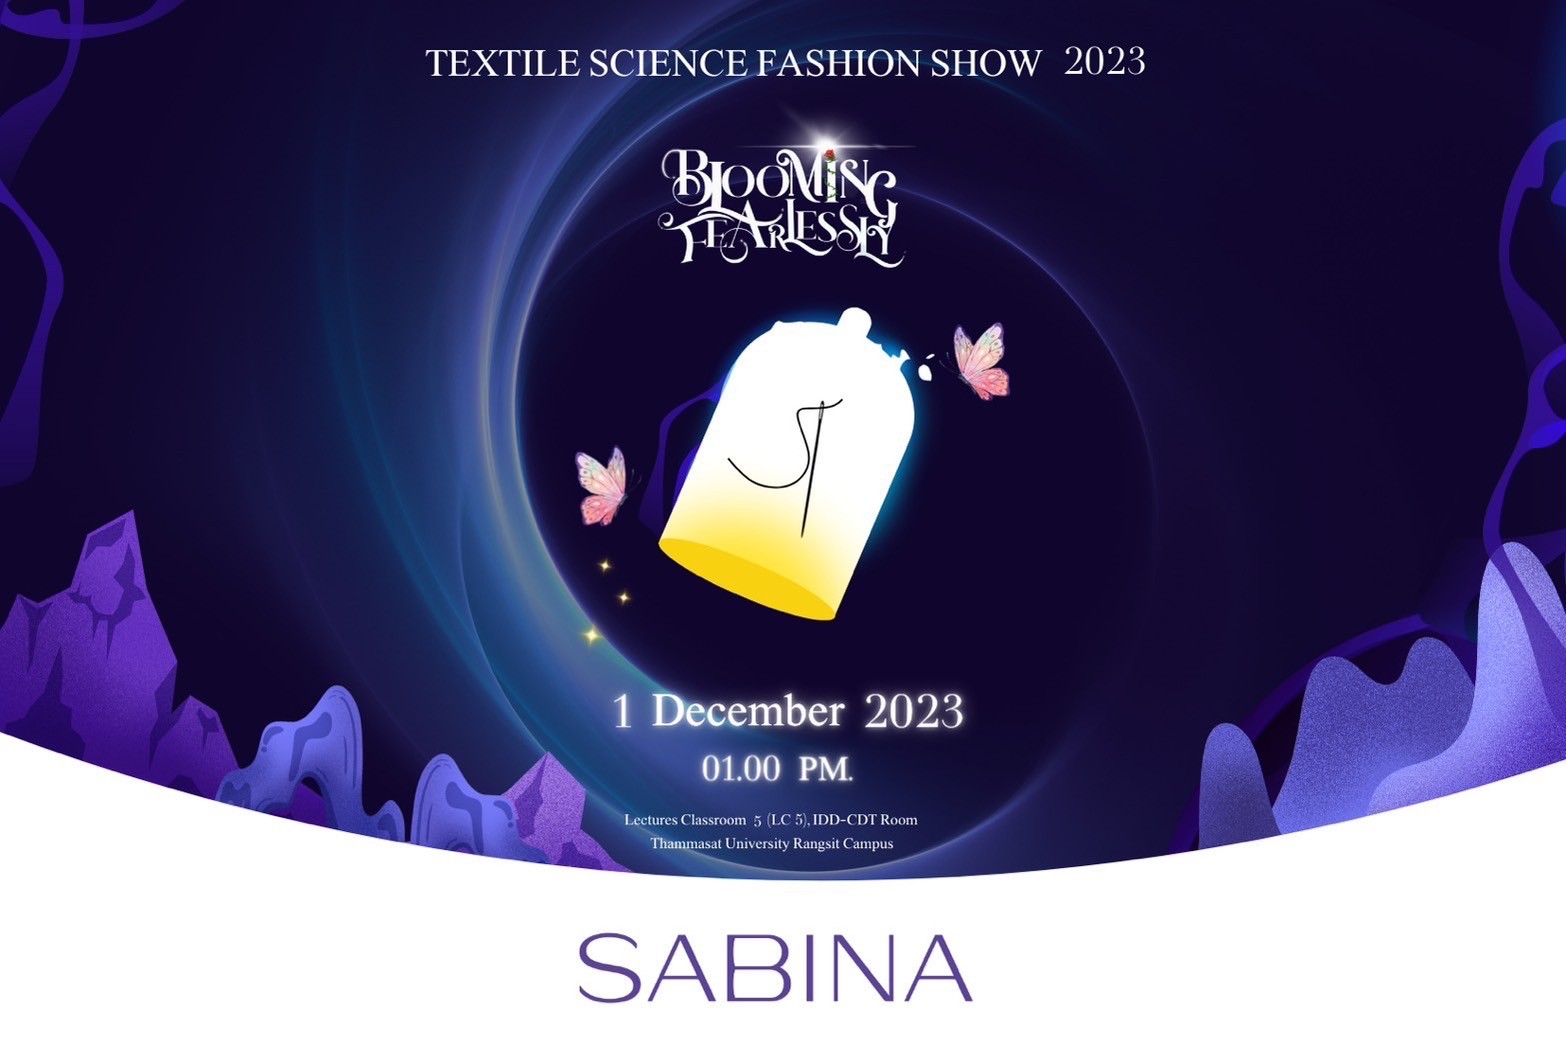 บริษัท ซาบีน่า ฟาร์อีสท์ จำกัด สนับสนุนงานเดินแฟชั่นโชว์ ประจำปี 2566 (Textile Science Fashion Show 2023)